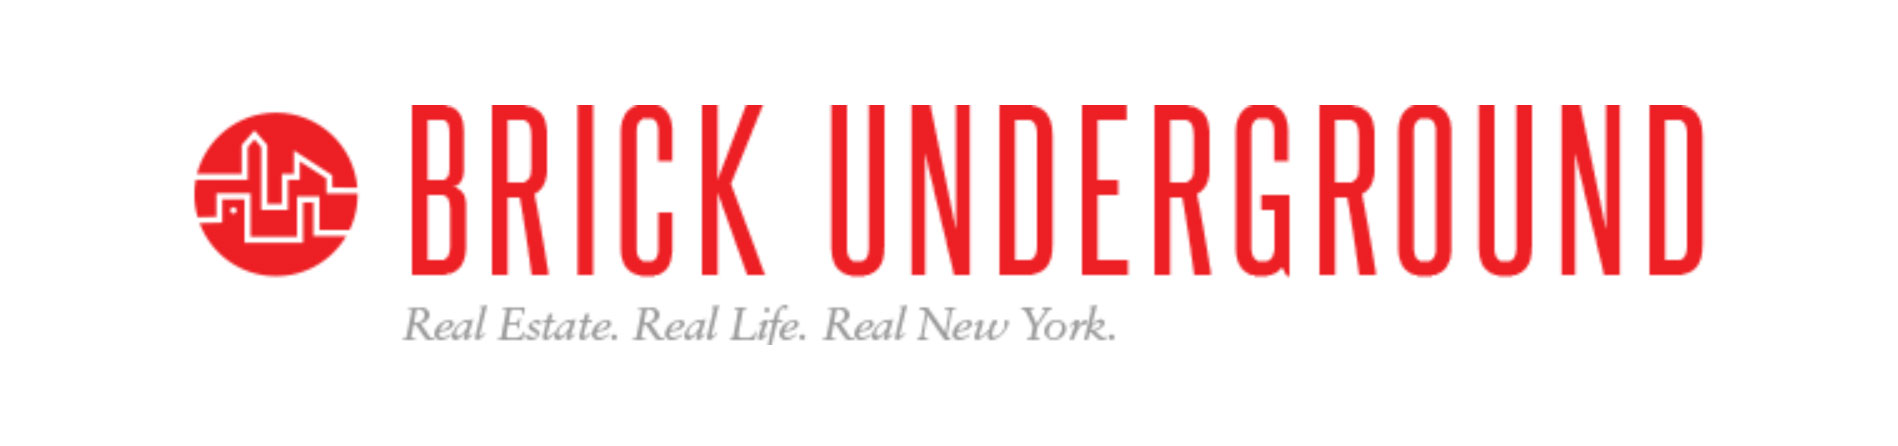 Brick Underground logo